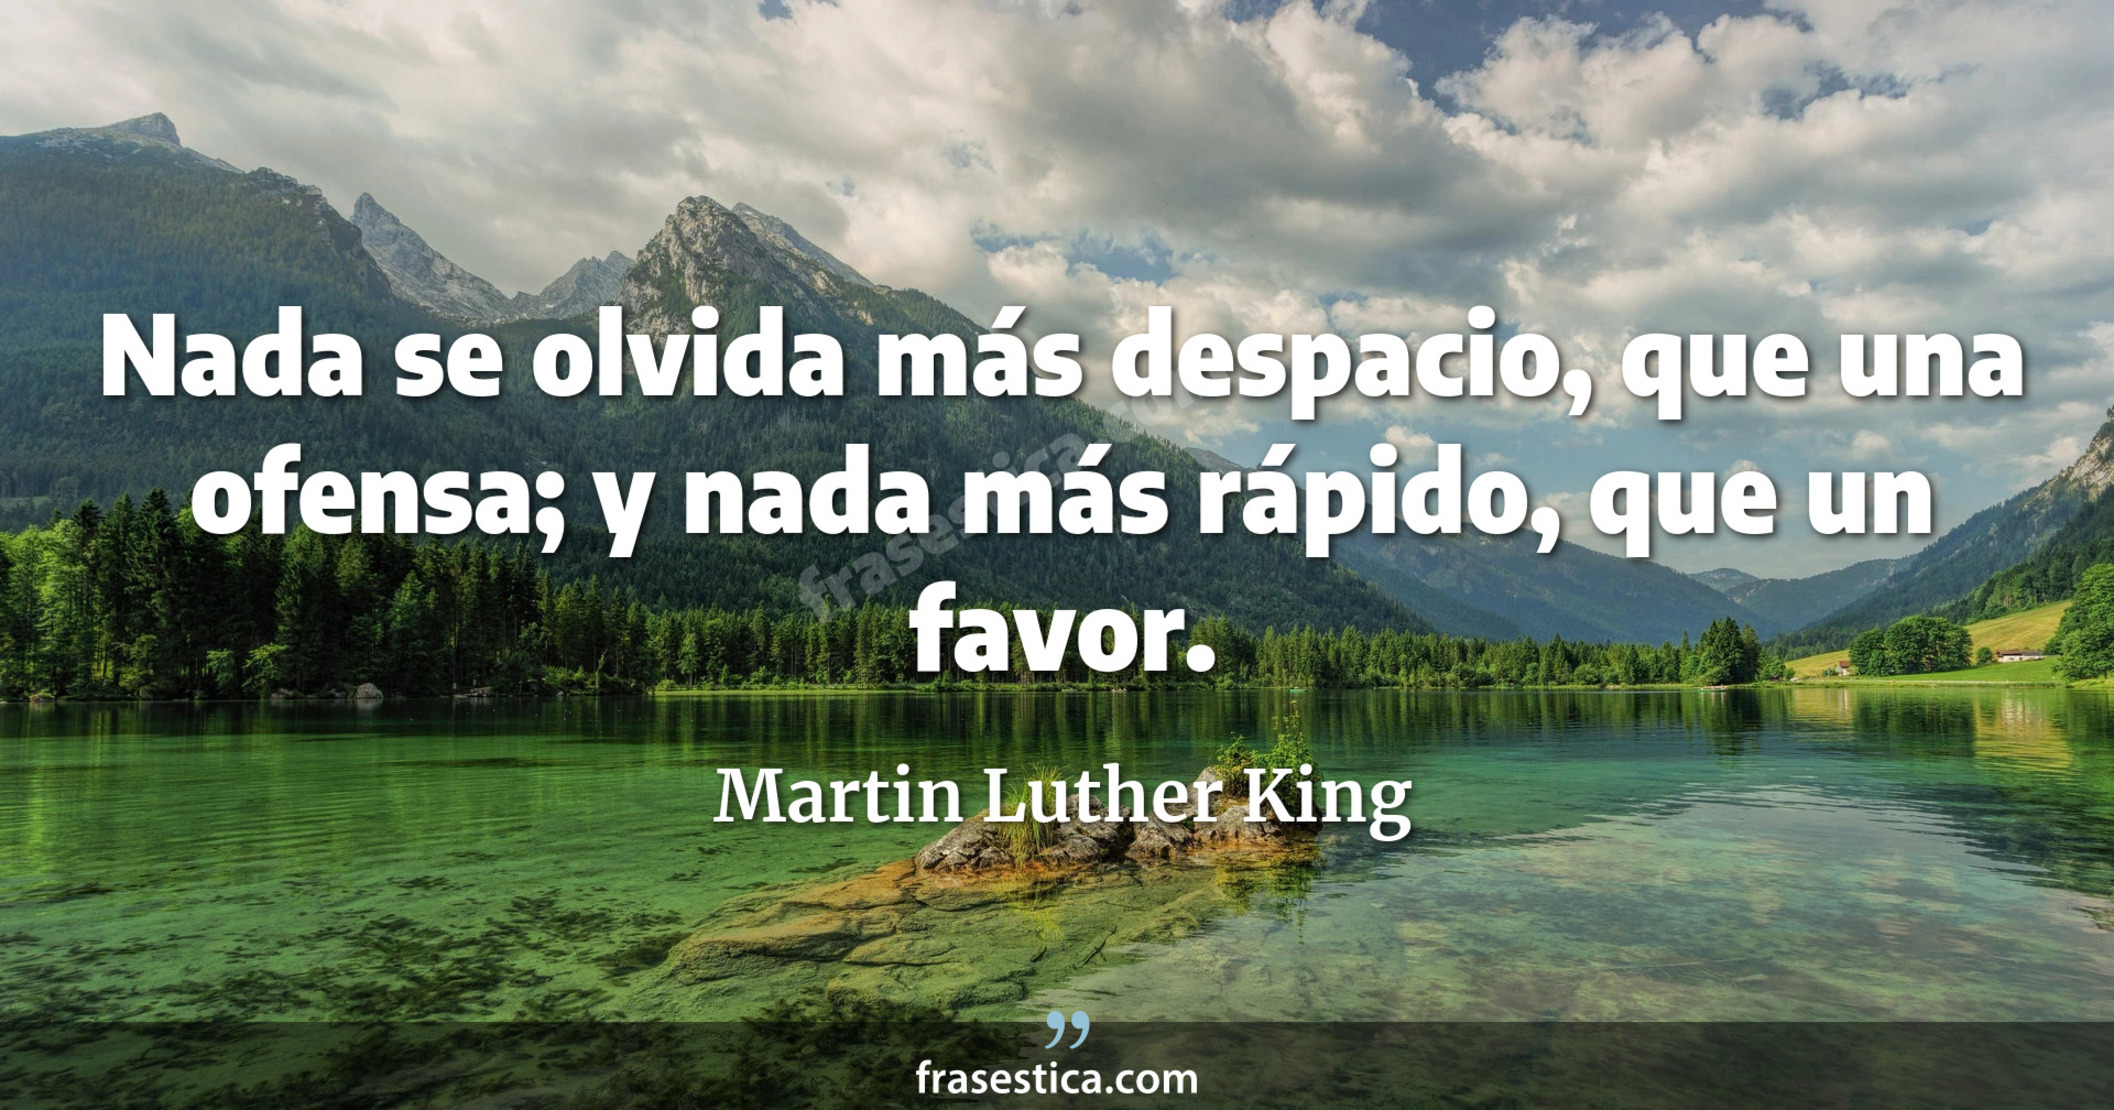 Nada se olvida más despacio, que una ofensa; y nada más rápido, que un favor. - Martin Luther King